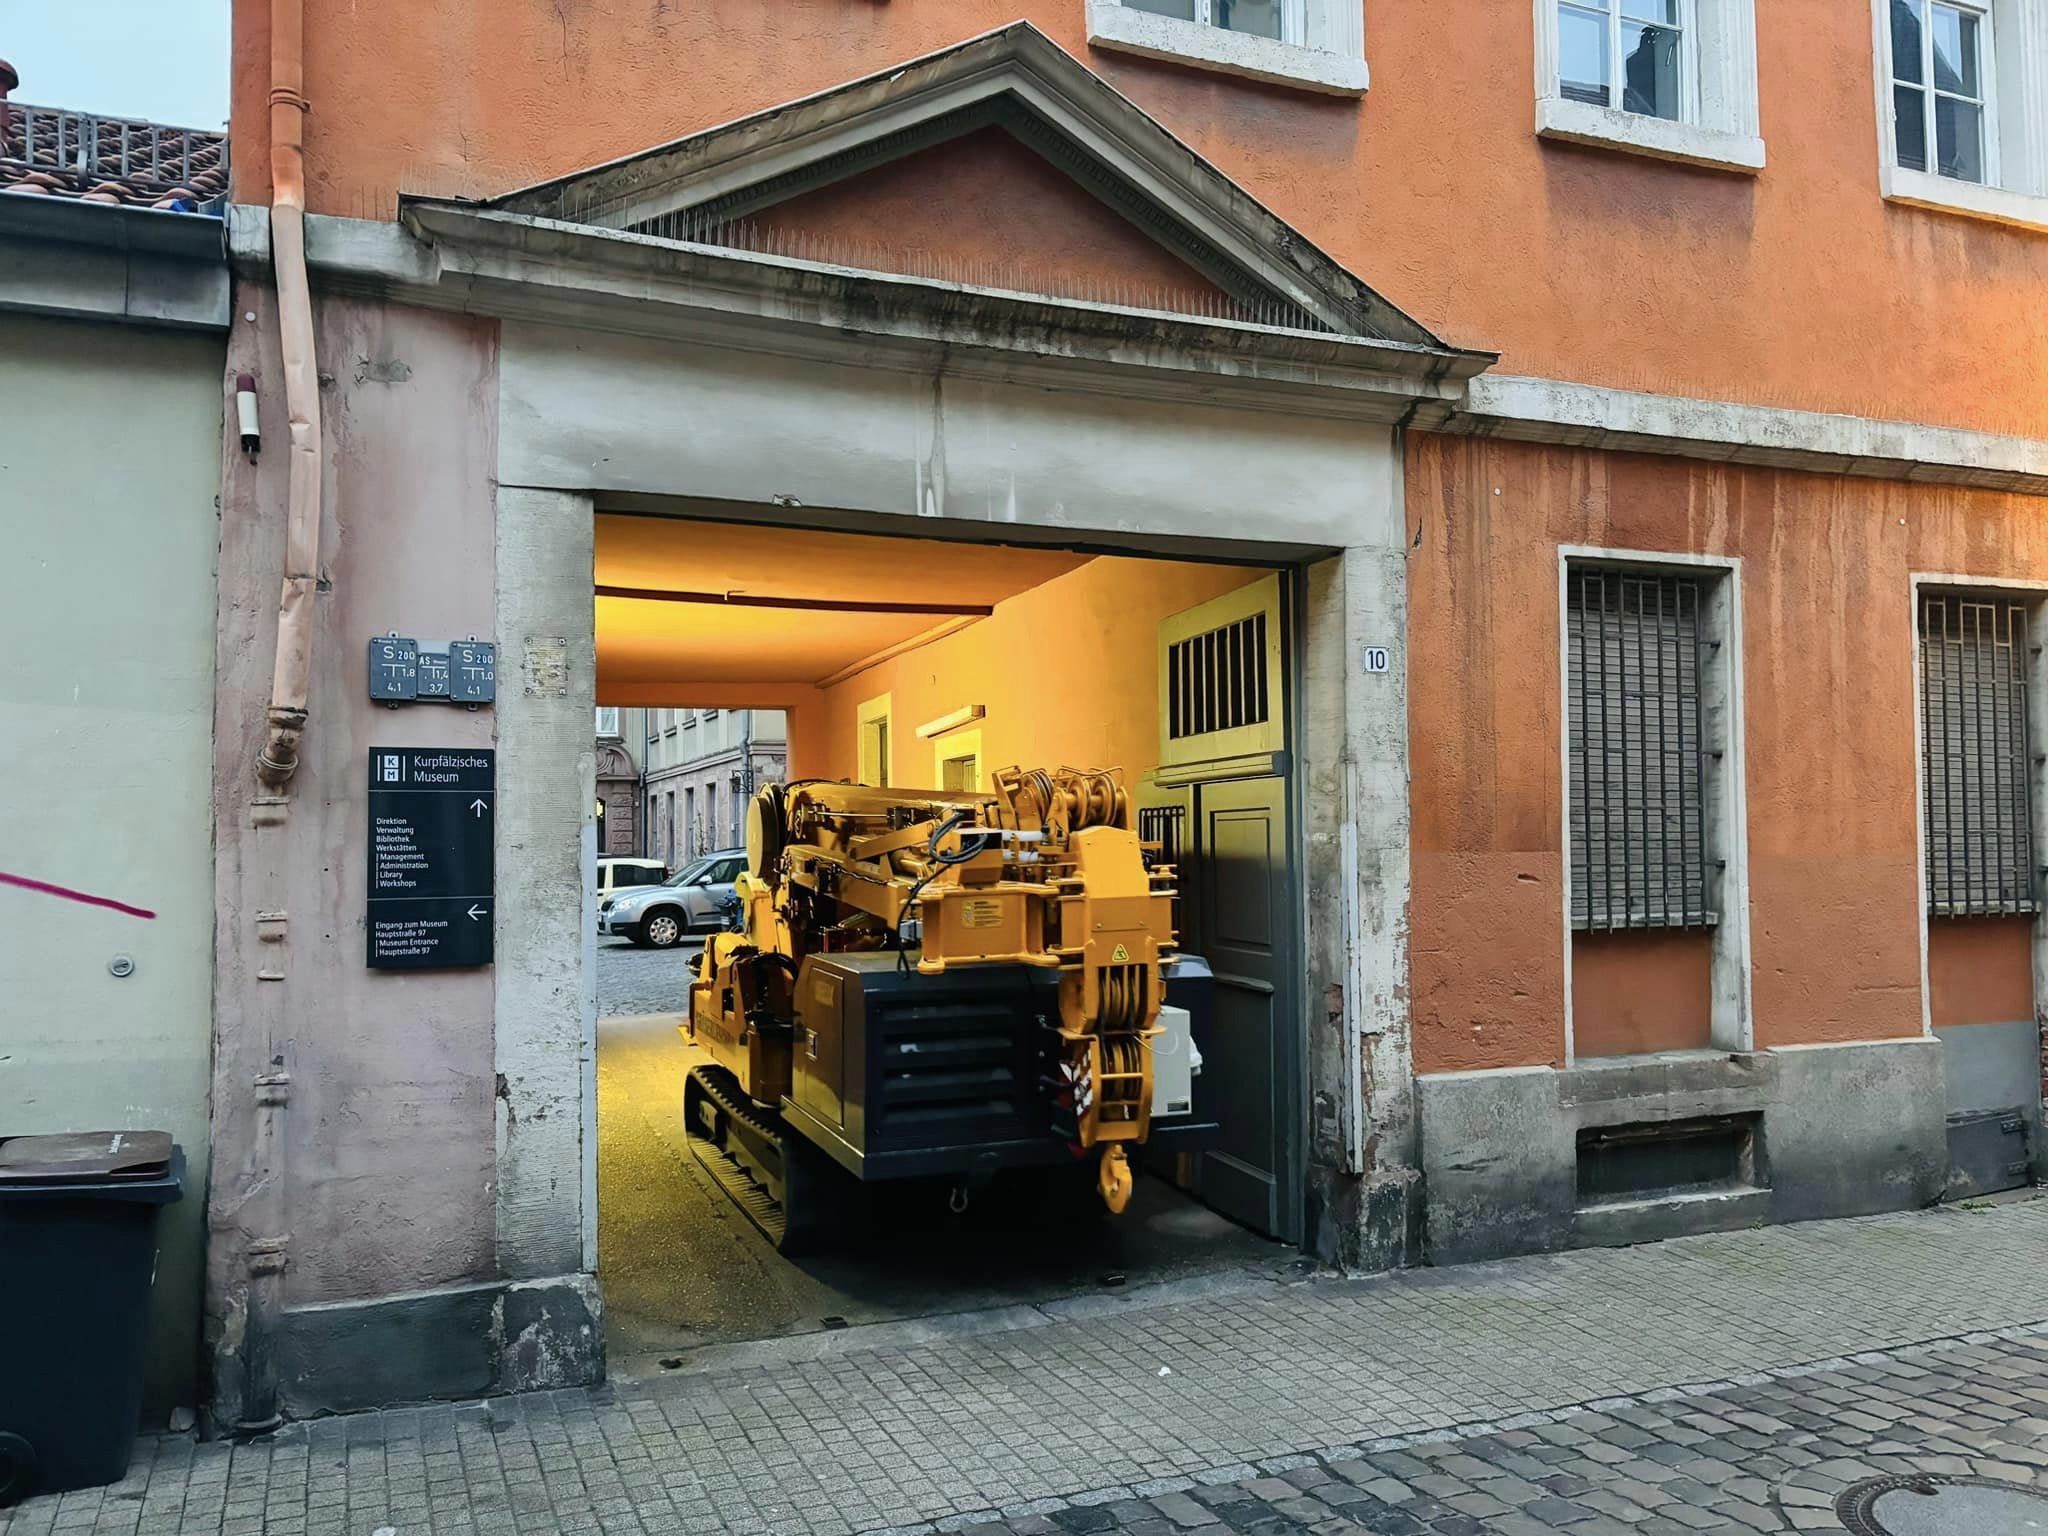 Minikran Obelix in der Heidelberger Altstadt